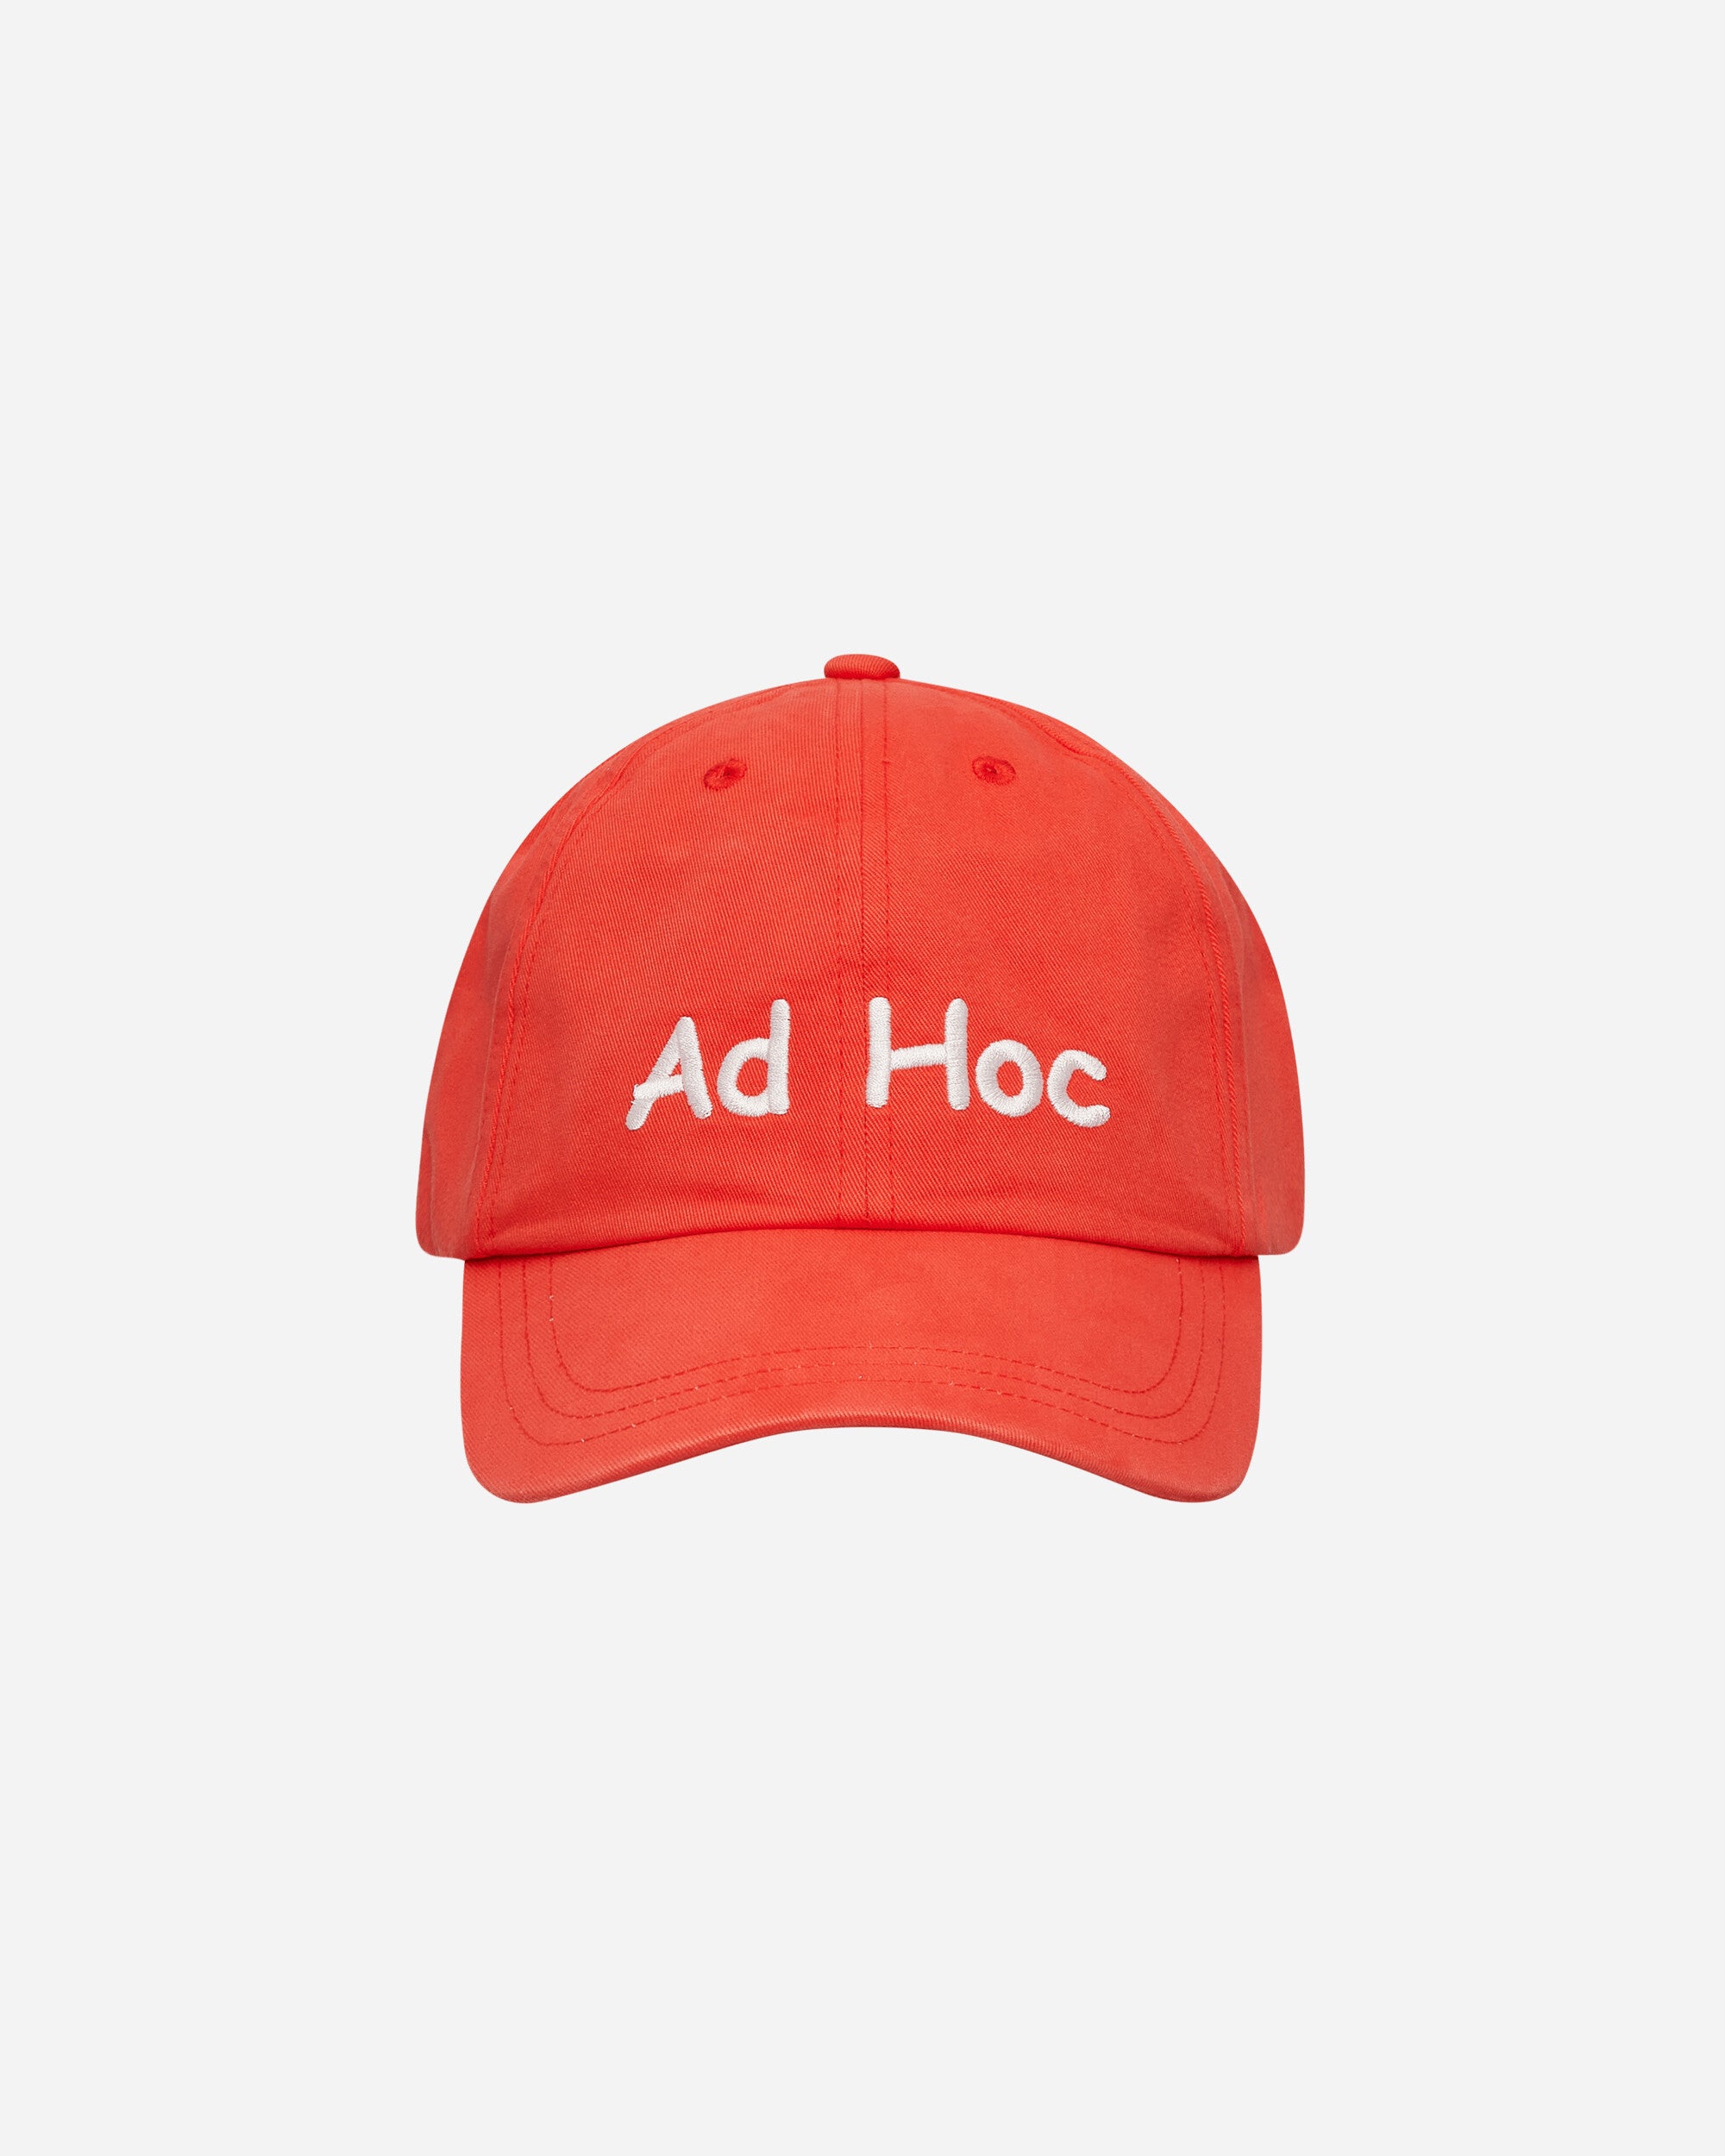 Public Possession "Ad Hoc" Cap Bright Red Hats Caps PPMODA24-019  1